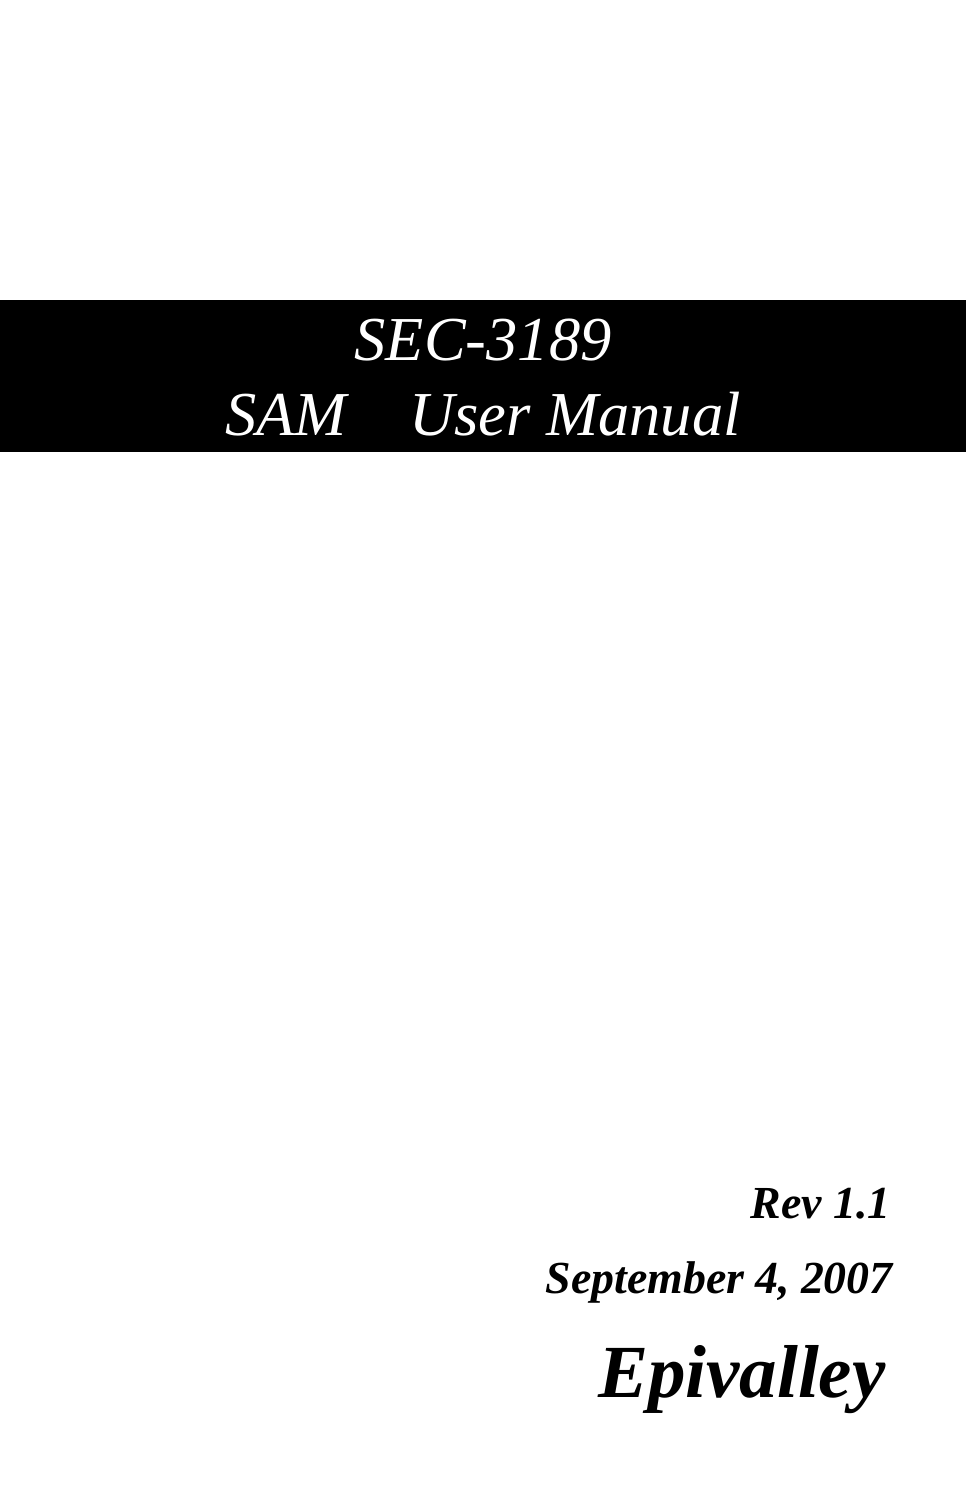                   SEC-3189 SAM  User Manual                                                  Rev 1.1                      September 4, 2007                        Epivalley   